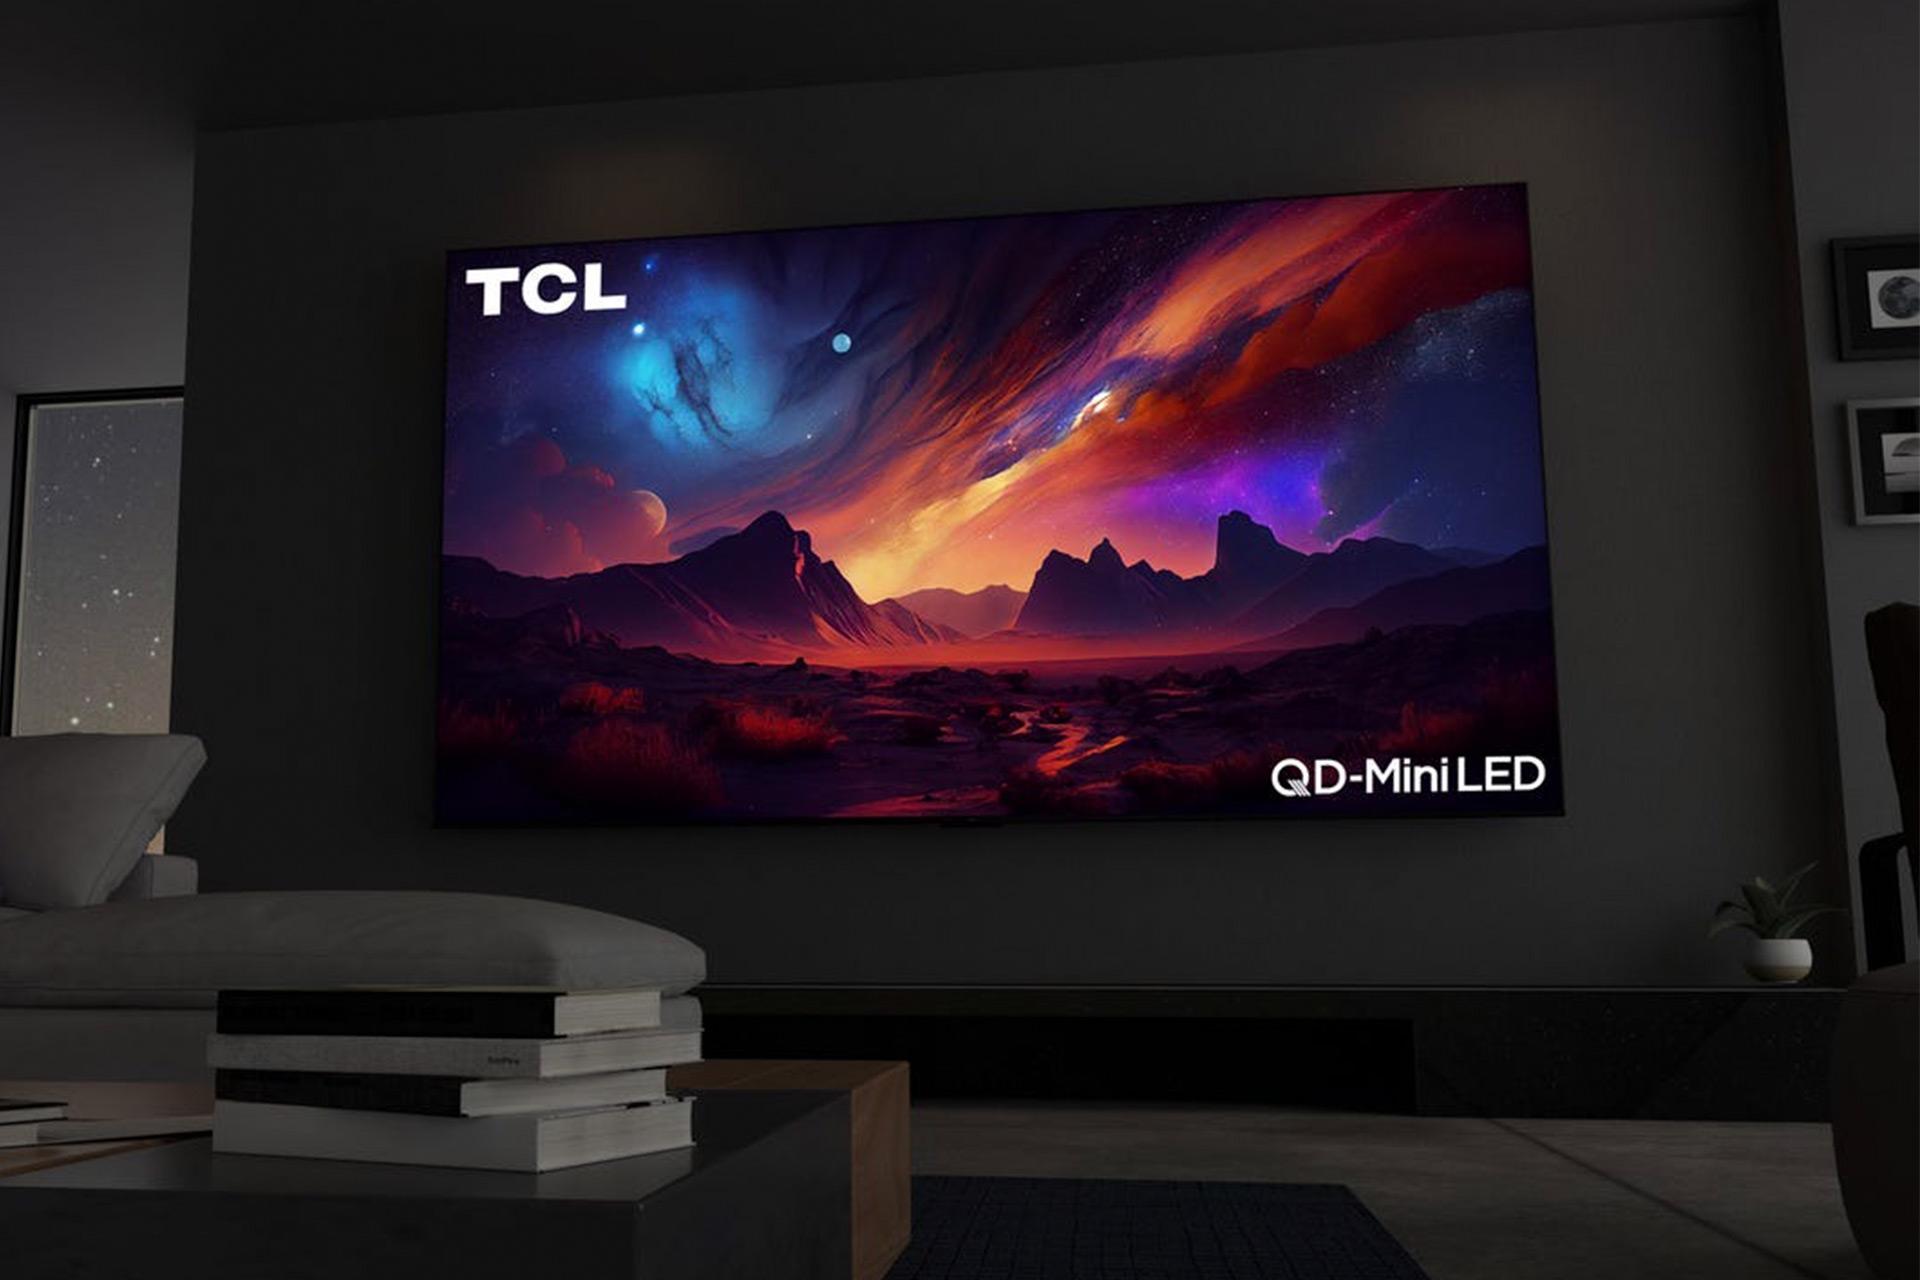 مرجع متخصصين ايران نماي صفحه‌نمايش بزرگ تلويزيون ميني LED مدل QM89 TCL در خانه